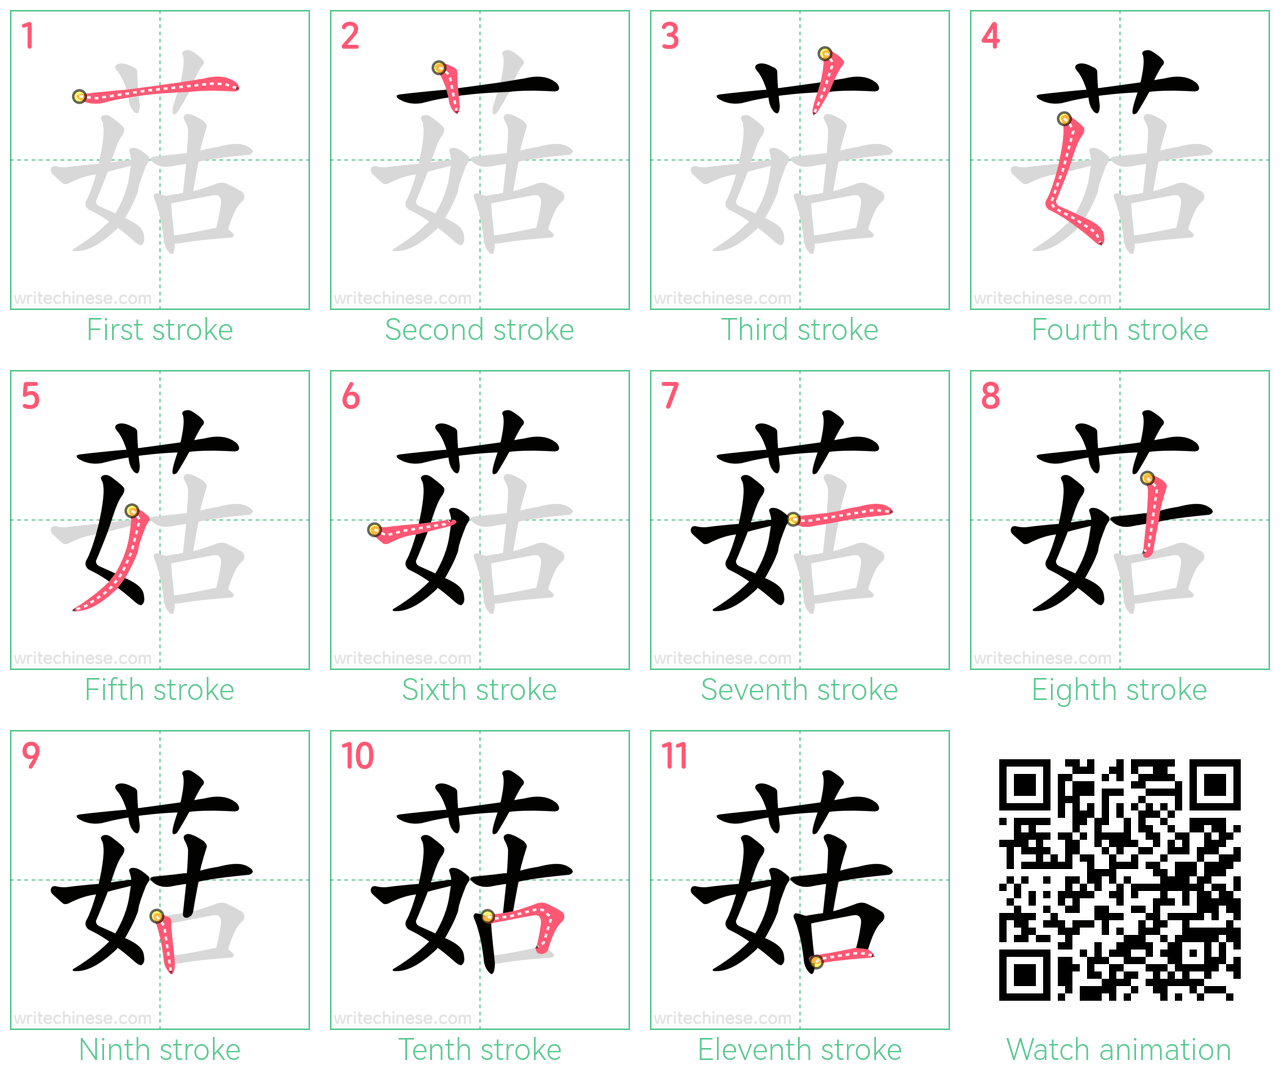 菇 step-by-step stroke order diagrams